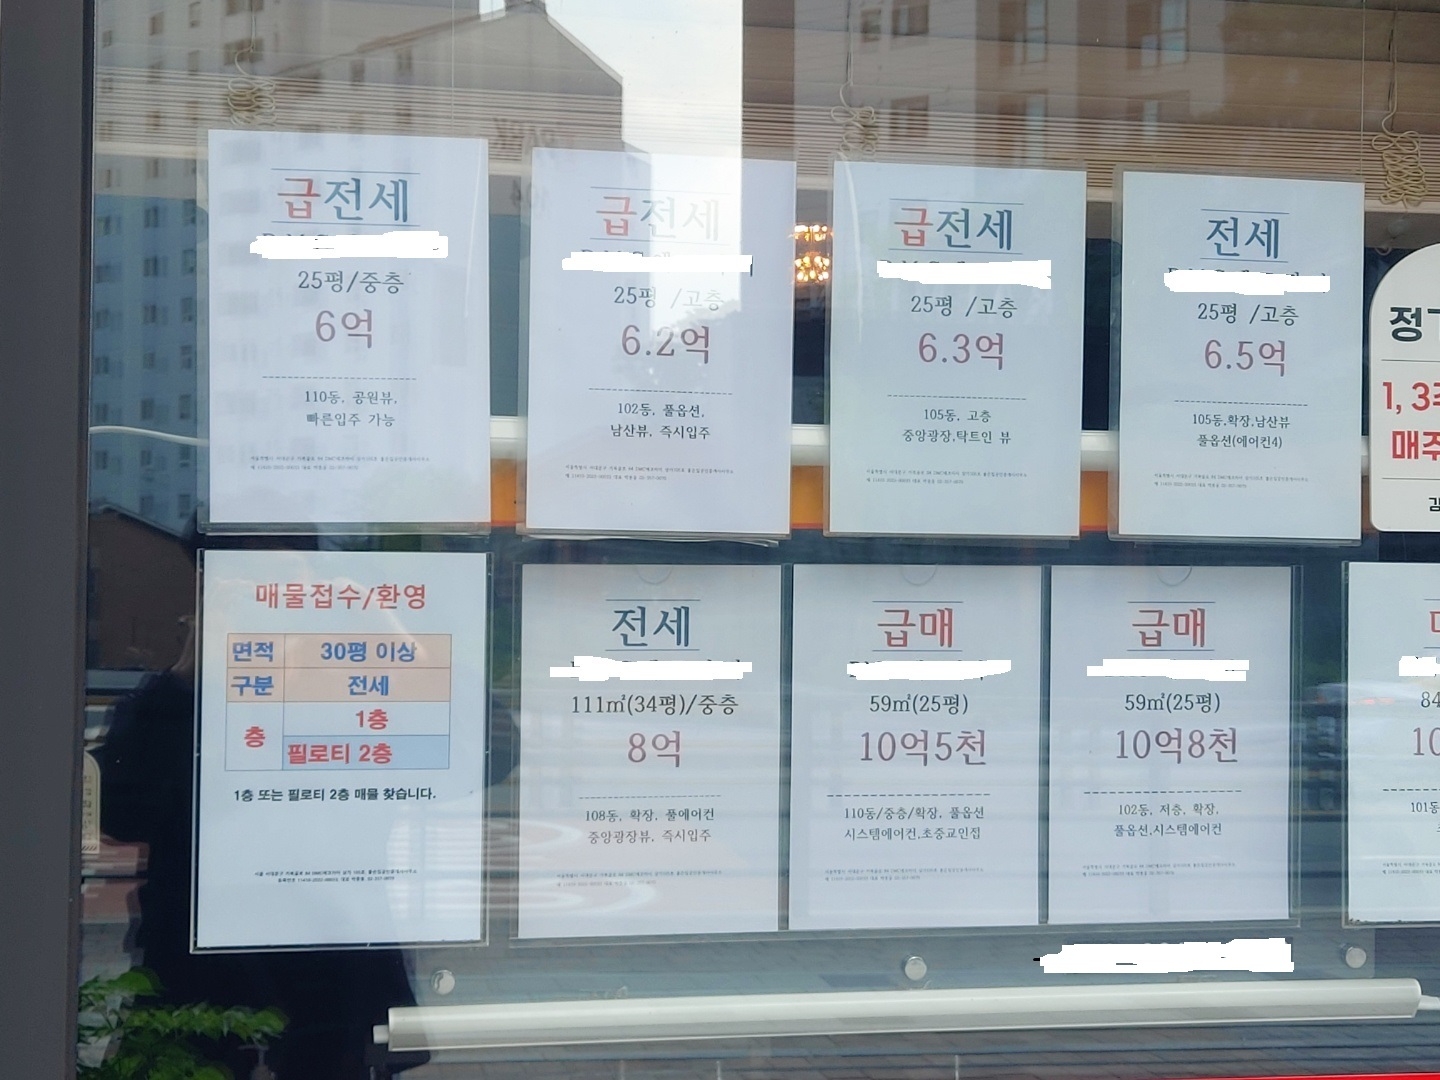 급전세 및 급매물 판매 안내가 붙은 서울 한 공인중개업소 전경